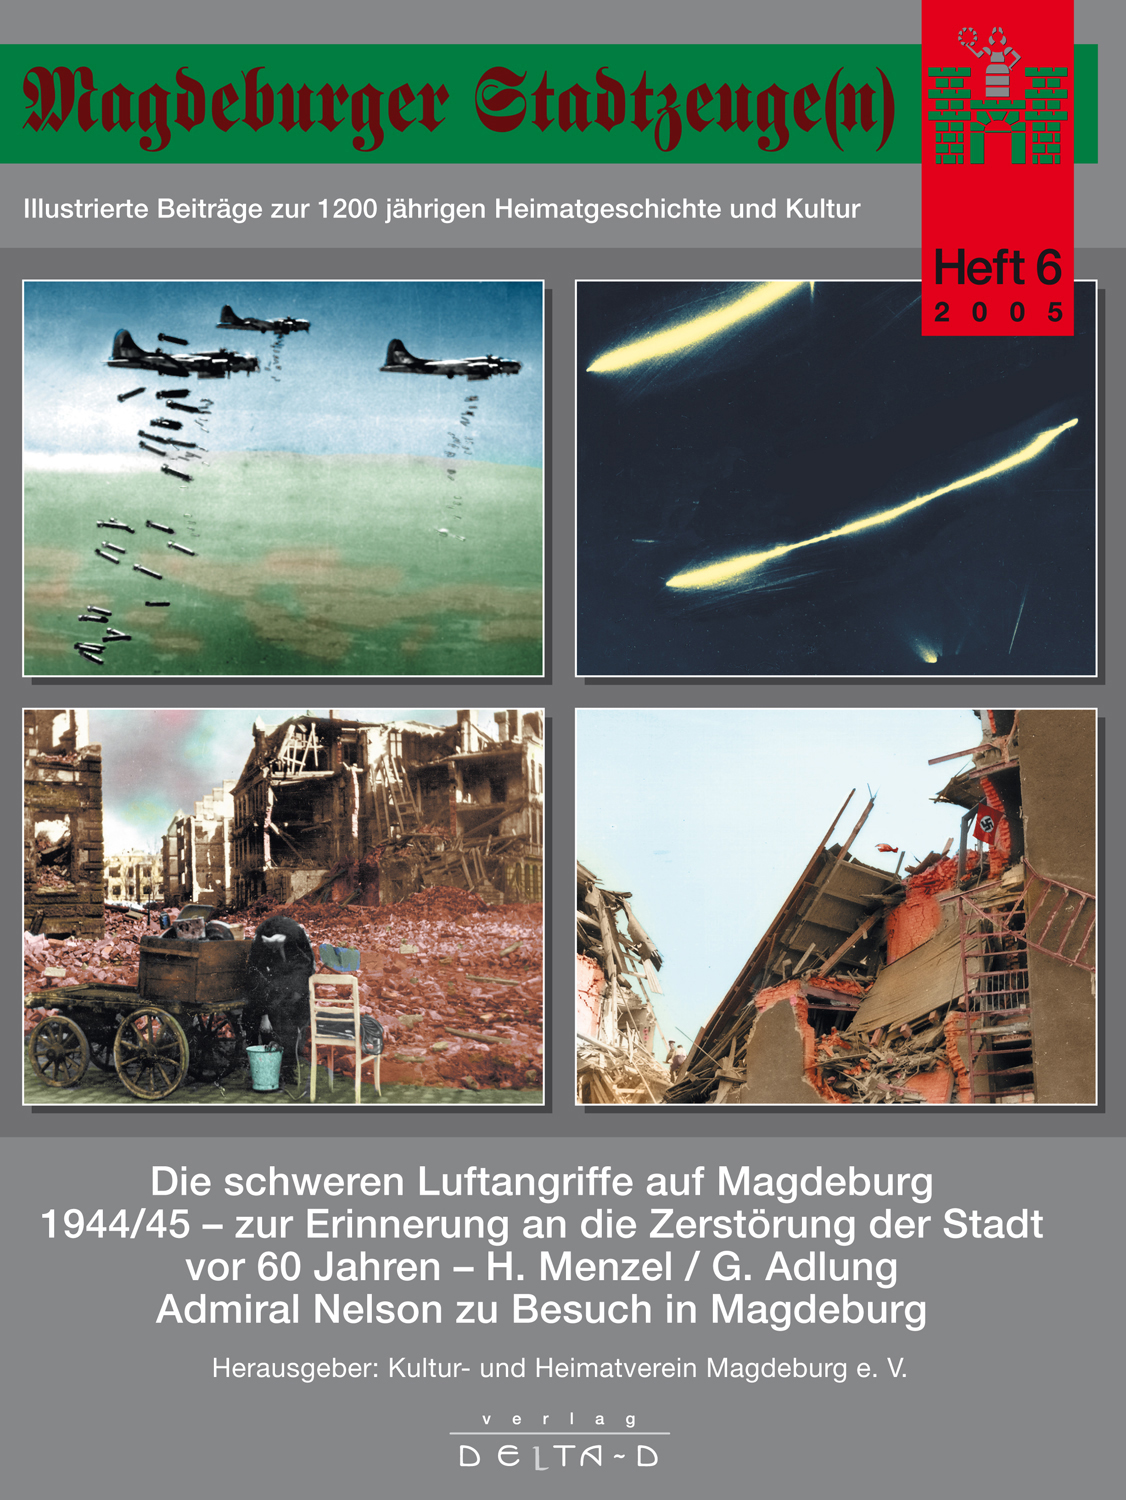 24 Magdeburg in der Zeit der DDR Magdeburger Stadtzeuge Nr 